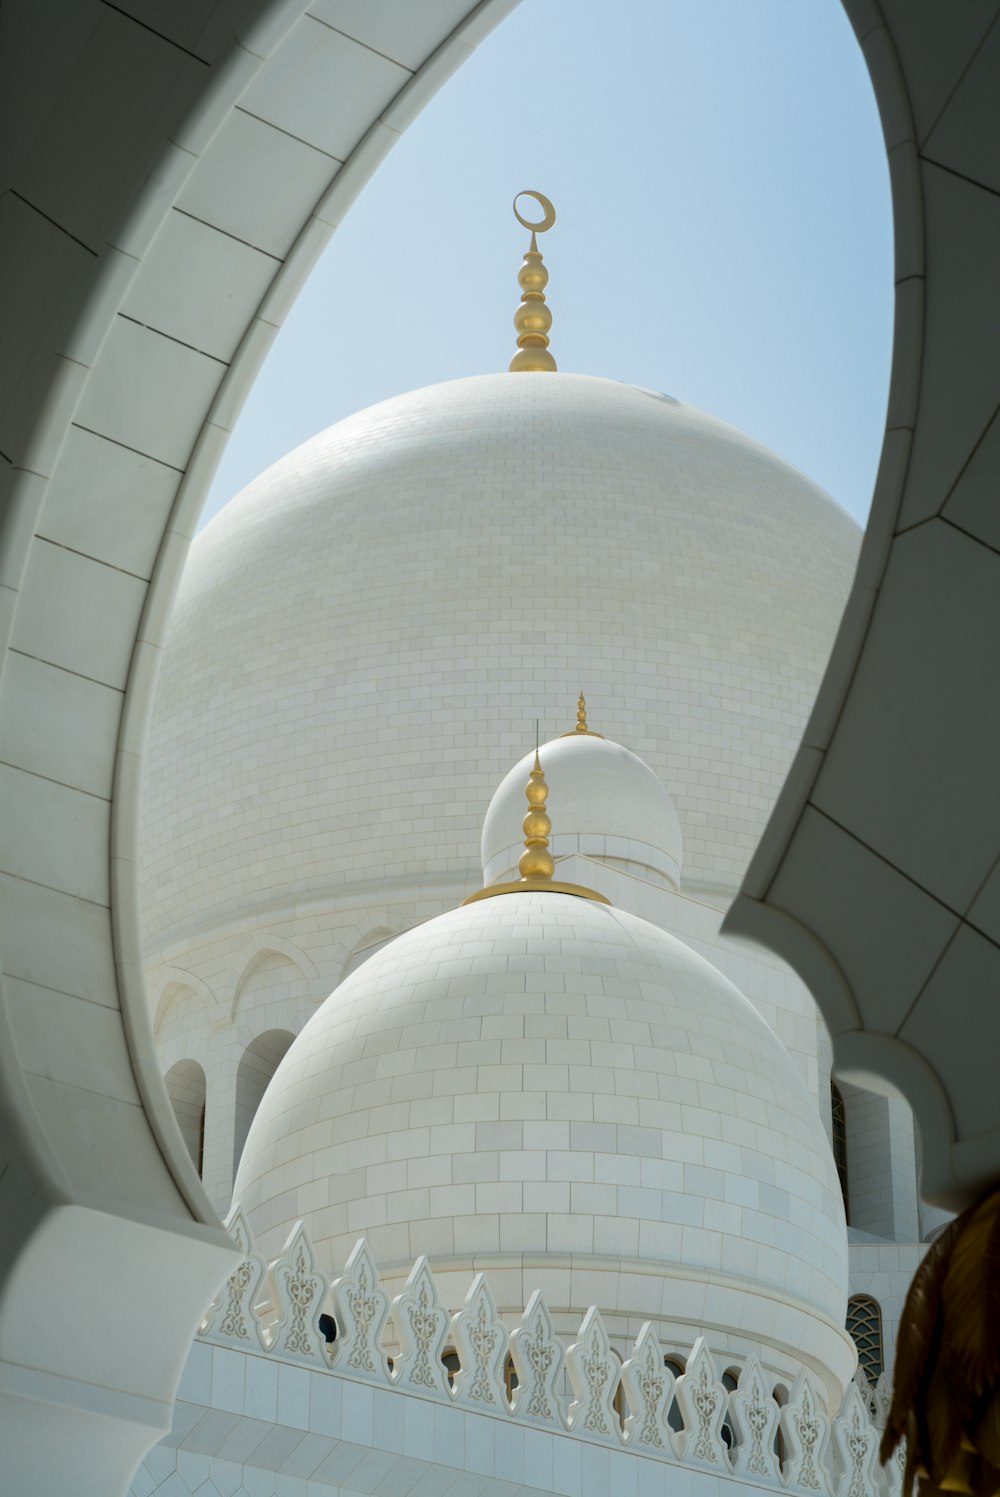 Moschea della cupola bianca